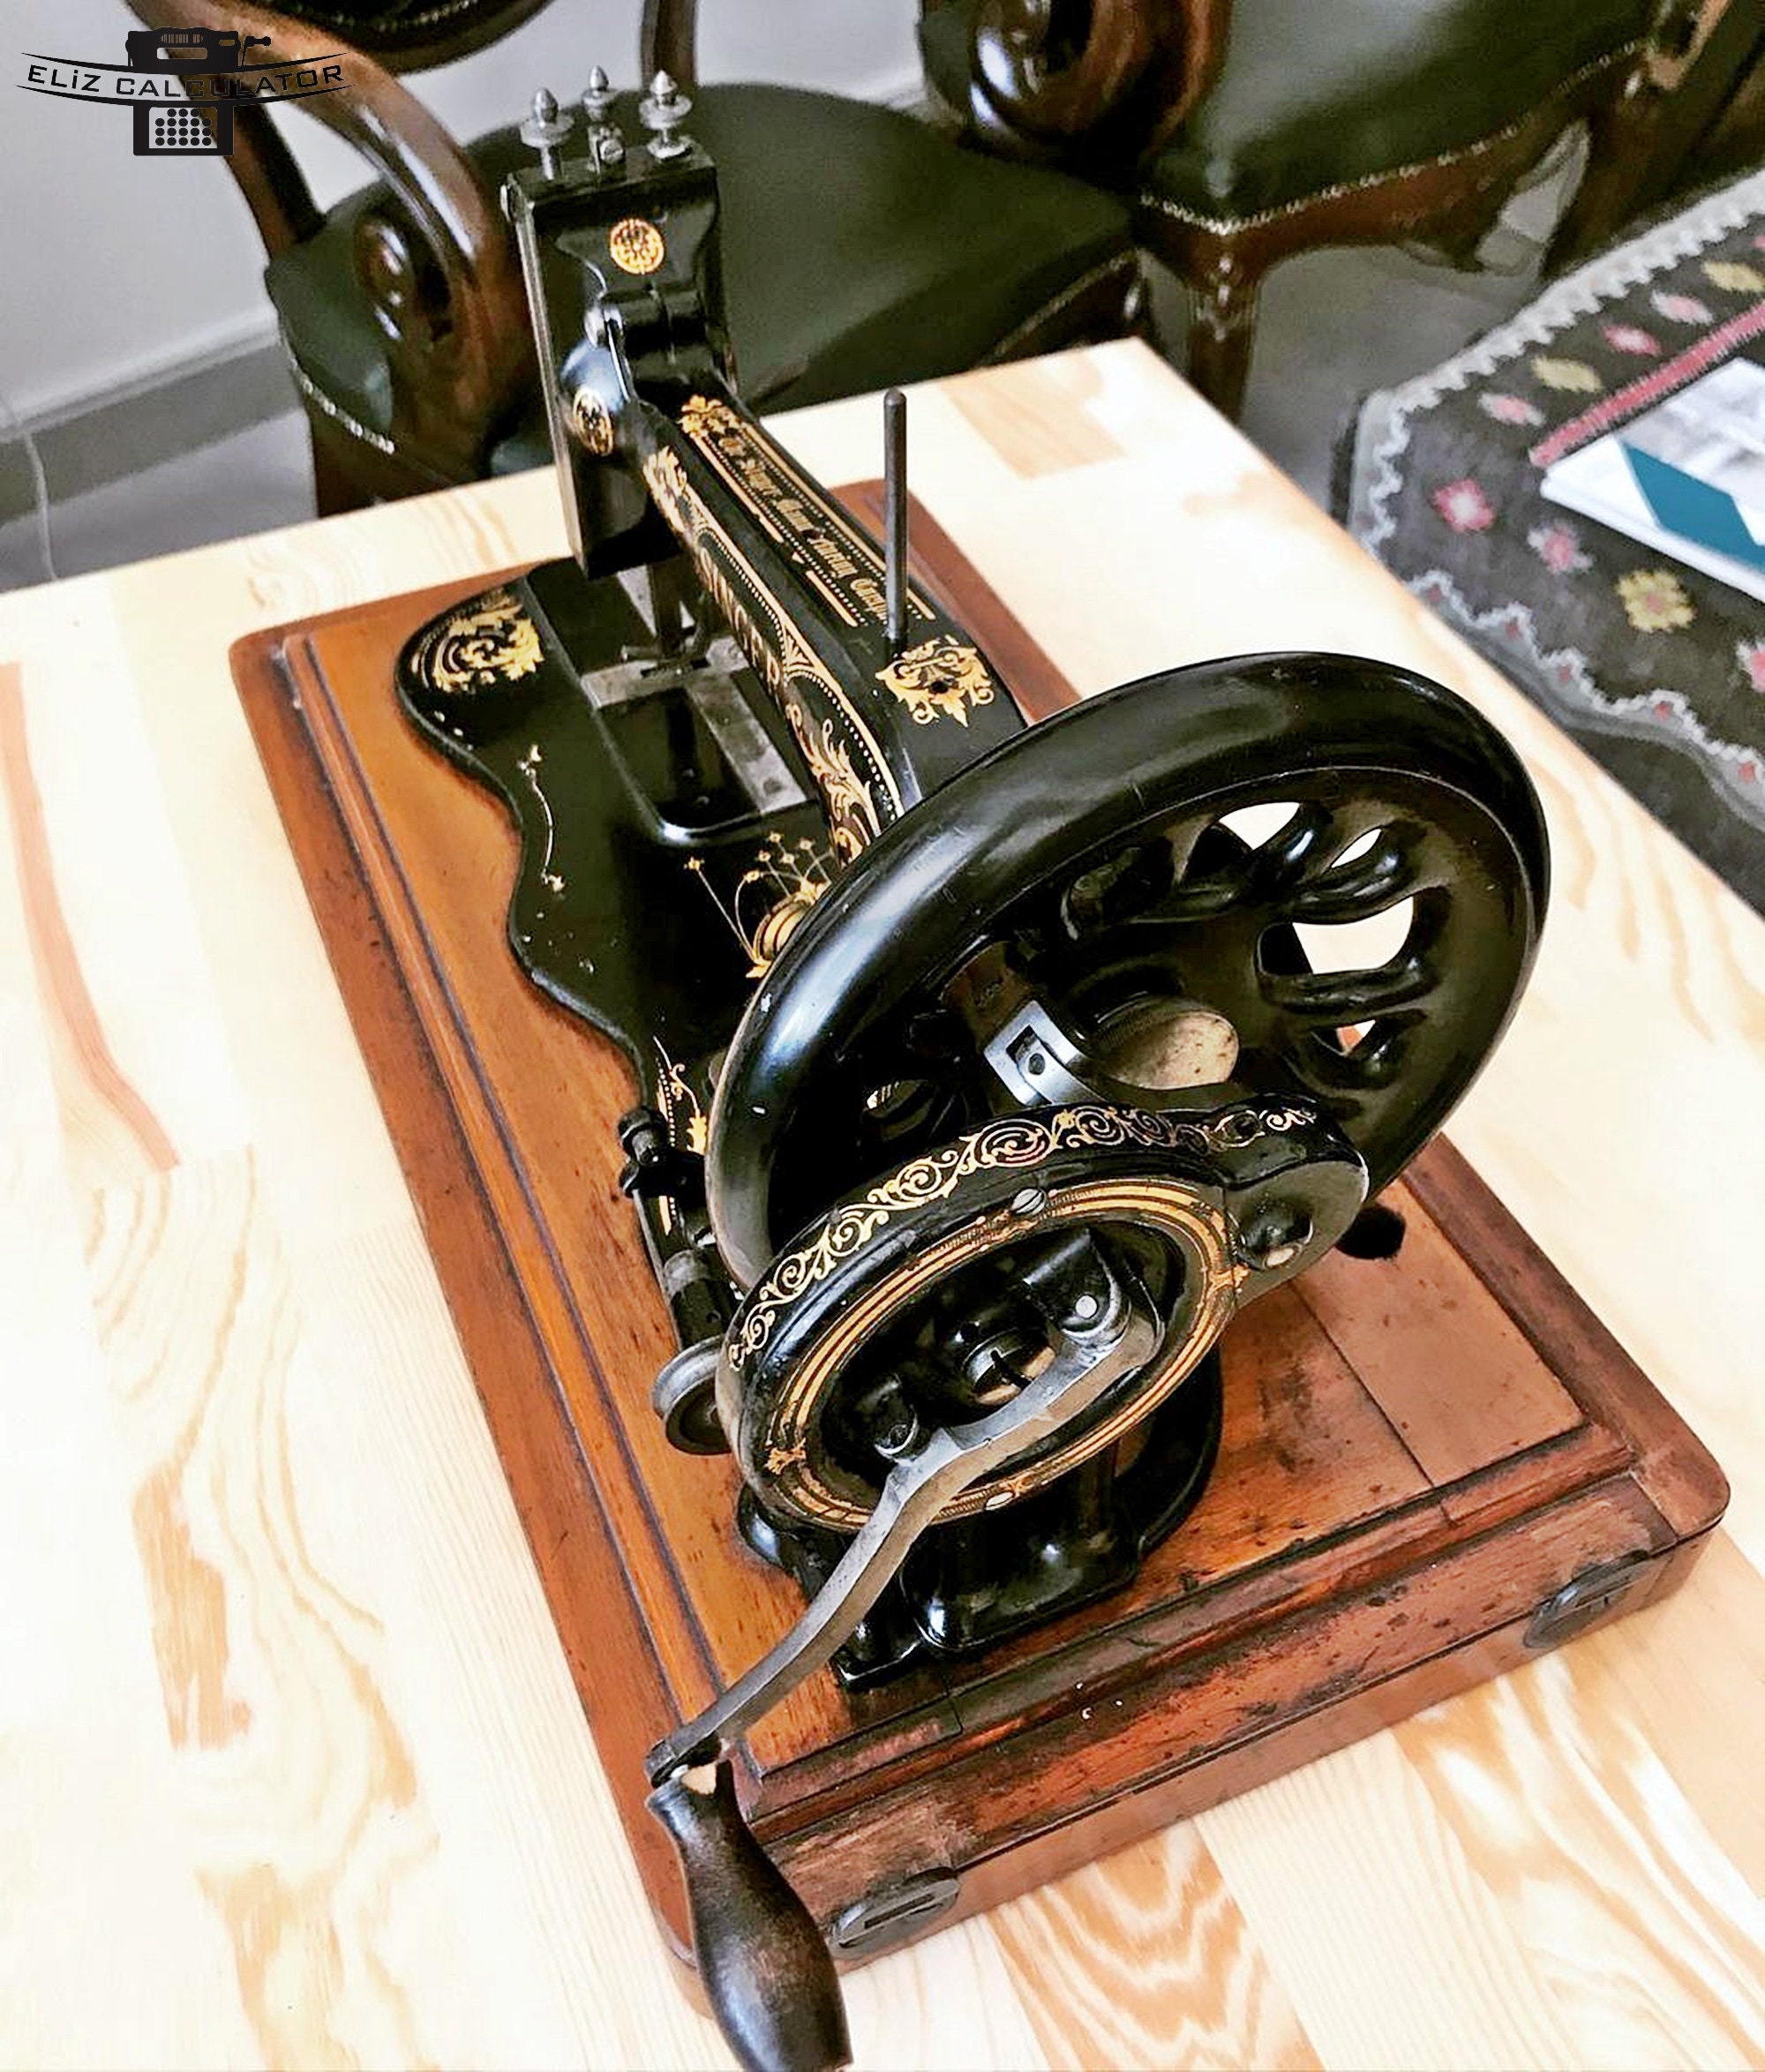 Original Bent Vintage Singer Sewing Machine in Wooden Case -  Finland